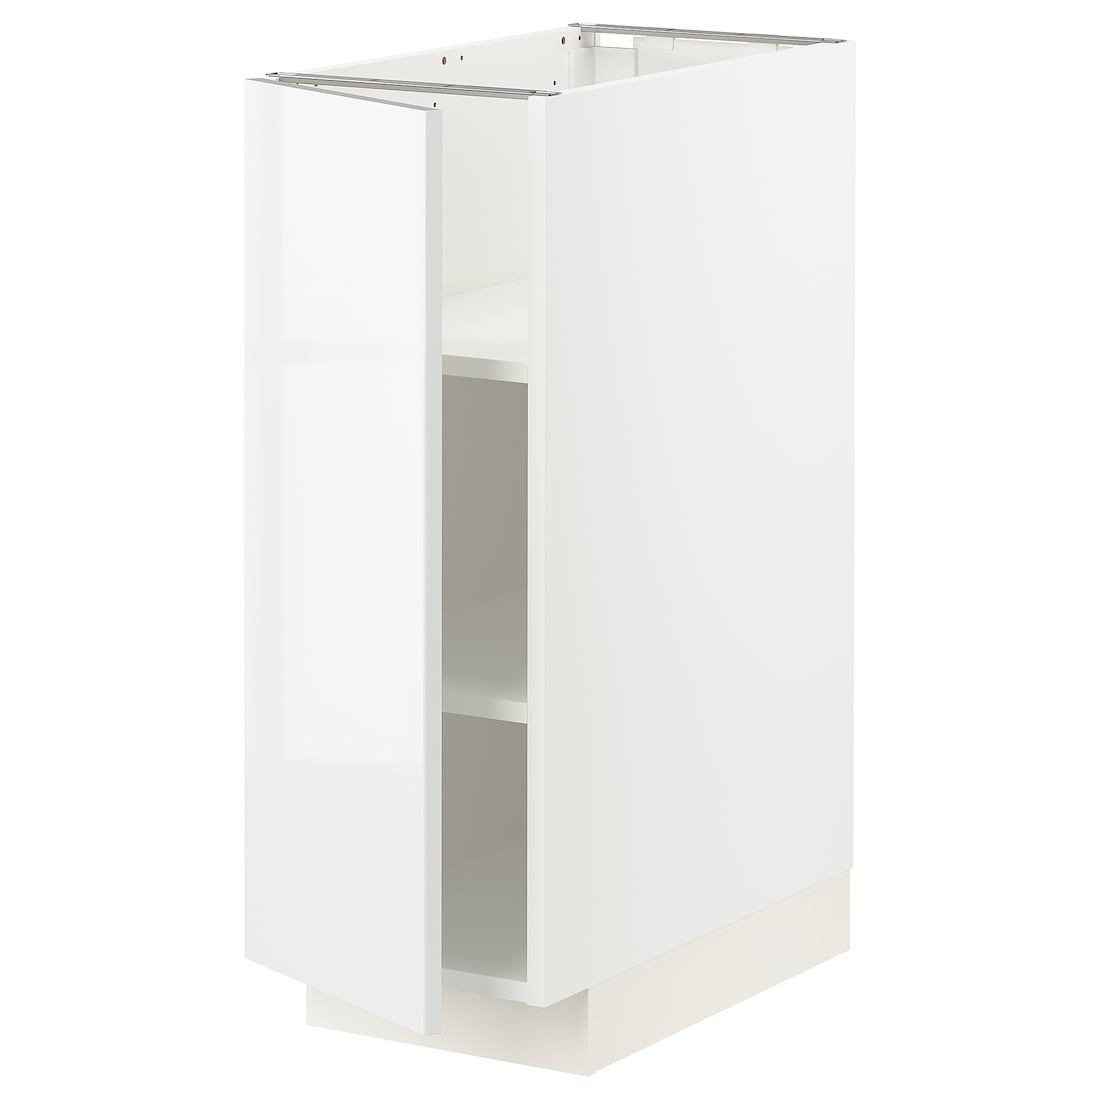 IKEA METOD МЕТОД Напольный шкаф с полками, белый / Ringhult белый, 30x60 см 99469362 | 994.693.62